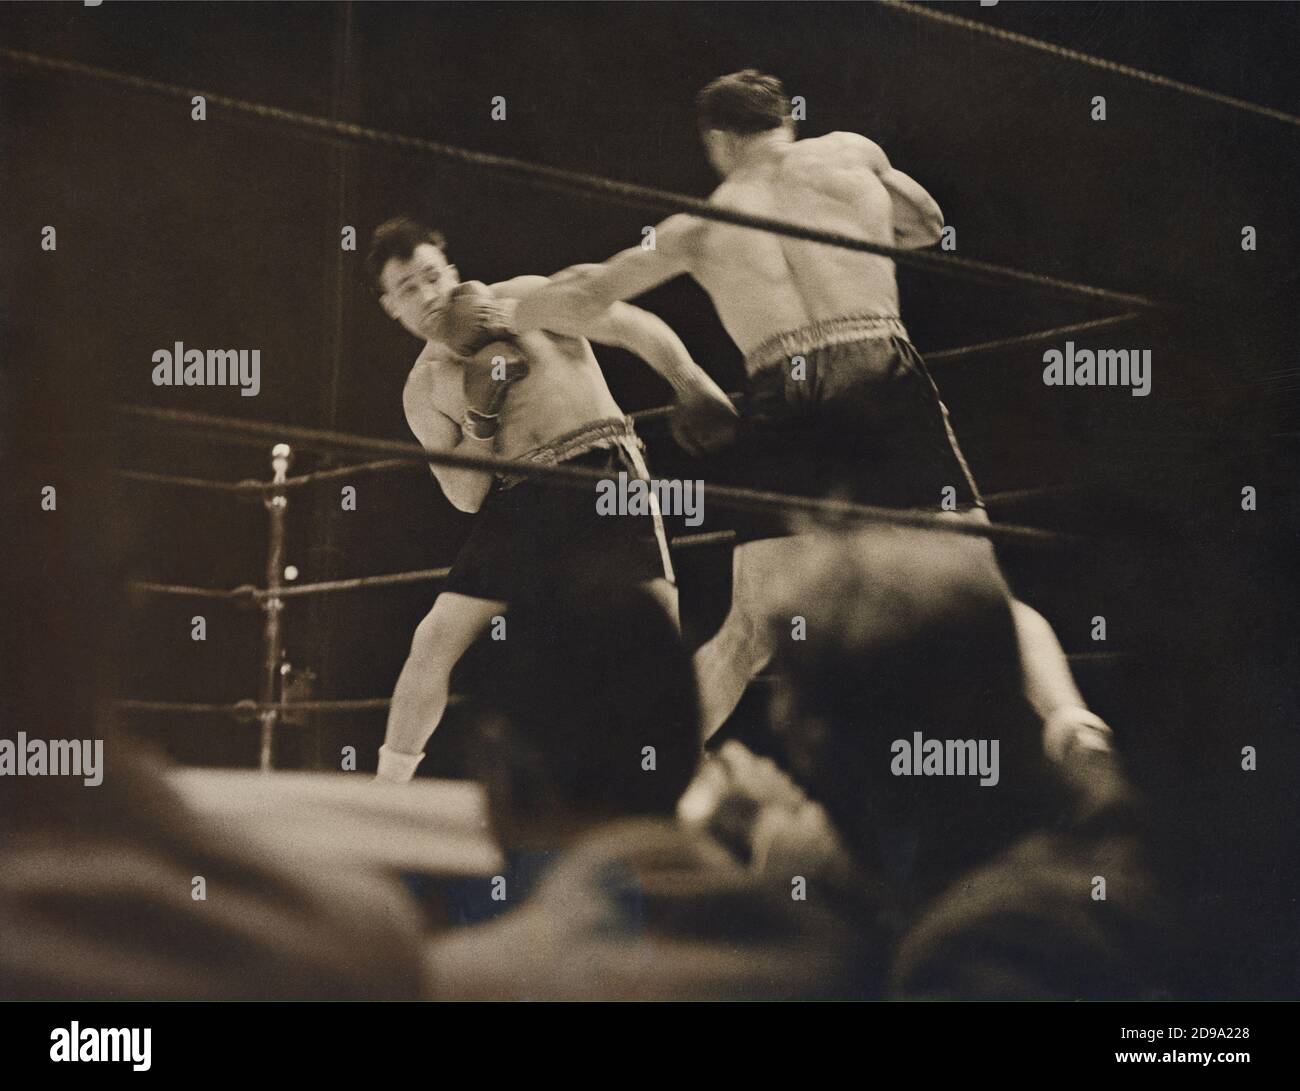 1933 , 29 juin , Etats-Unis : le boxeur italien PRIMO CARNERA ( 1906 - 1967 ), champion du monde de boxe Heavyweight . A l'époque, a gagné le championnat du monde de poids lourd le 29 juin en battant JACK SHARKEY de Boston dans les soixante de leur combat au Madison Square Garden Bowl , long Island City , New York . La photo montre une image en bord de cercle faite au sixième tour montrant Sharkey sur la gauche recevant un gauche dur de Archiera - SPORT - BOX - sportivo - PESI MASSIMI - match - ring - PUGILATO - PUGILE - BOXEUR --- Carnvio GBB Banque D'Images